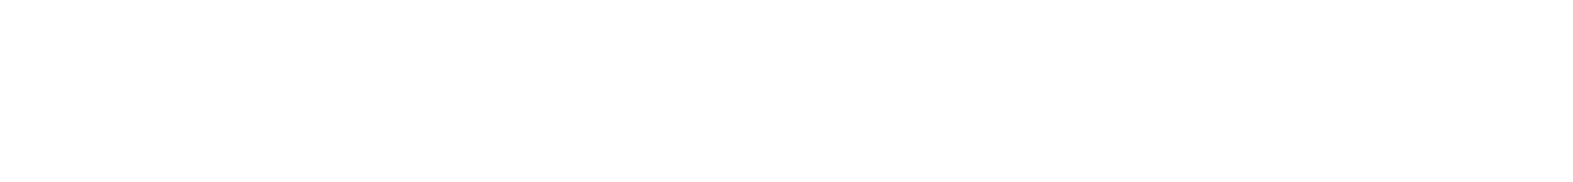 Marimekko logo large for dark backgrounds (transparent PNG)